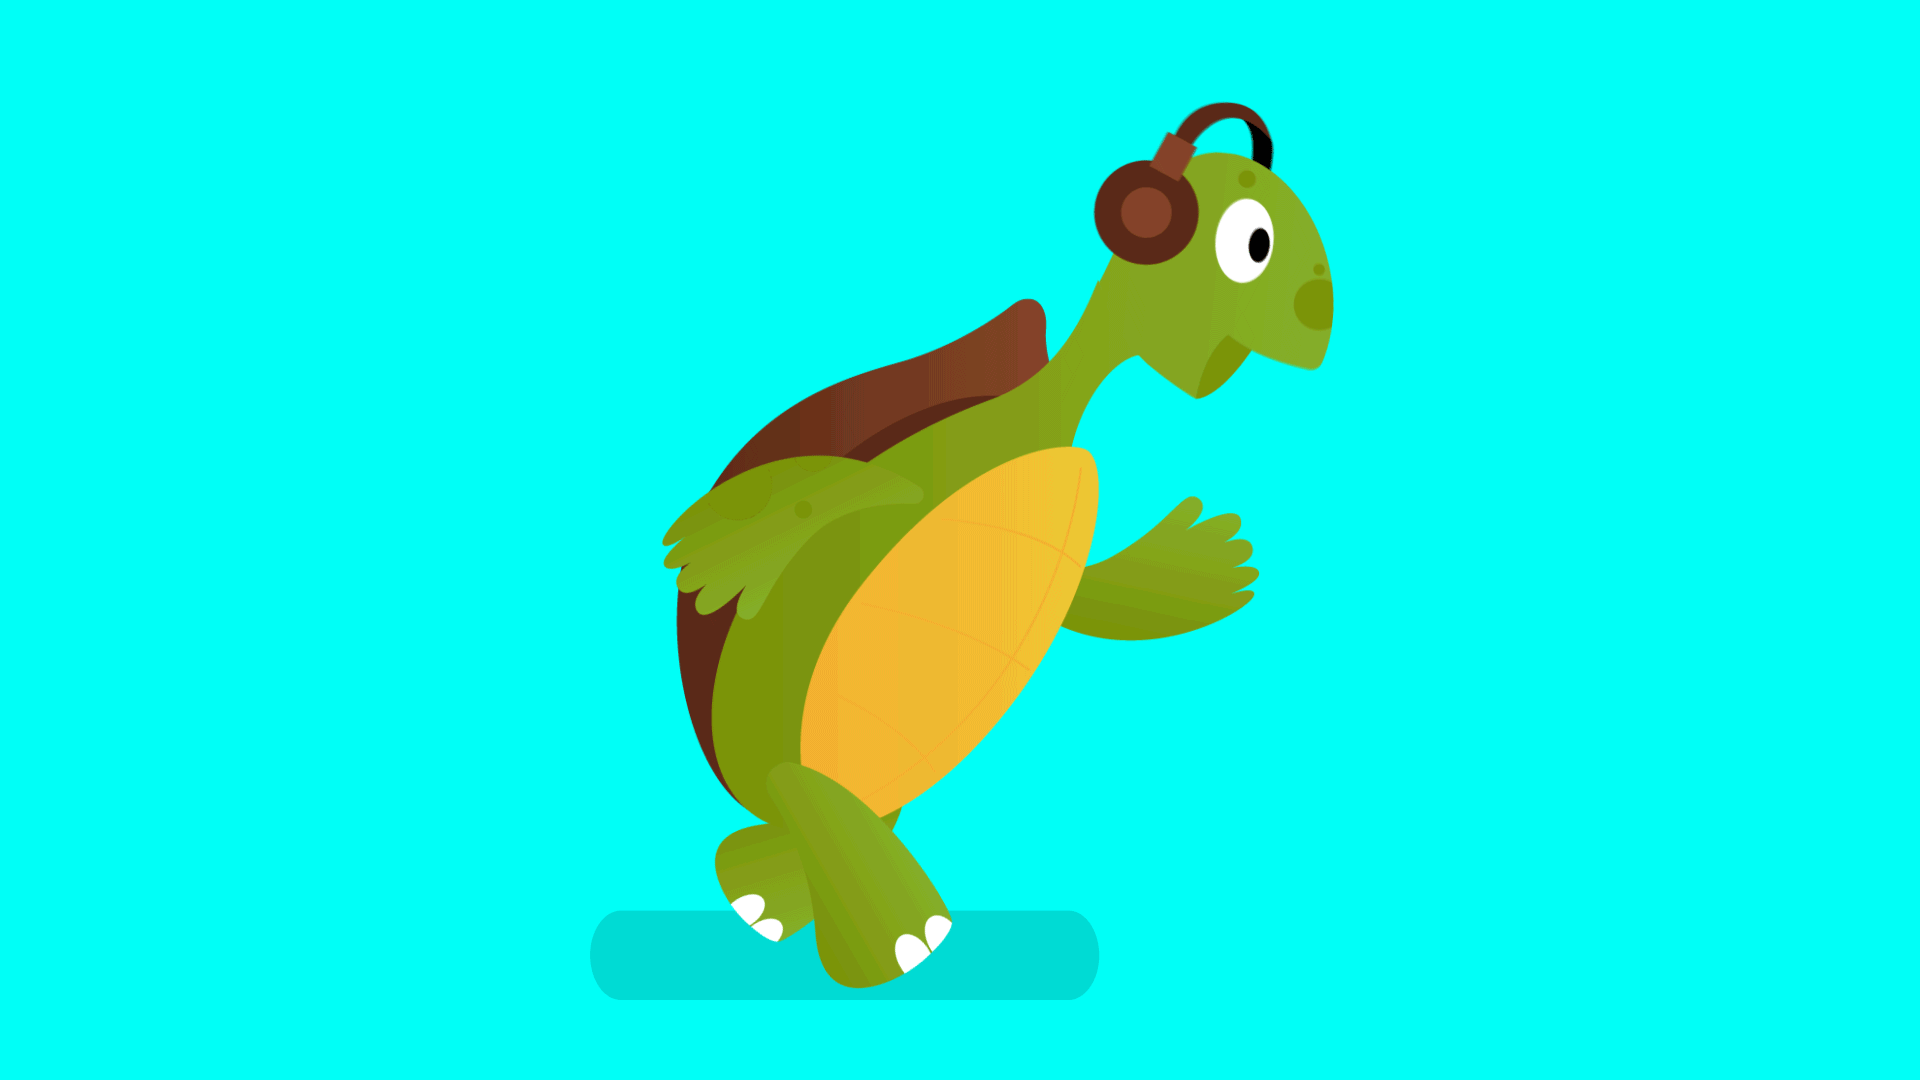 Turtle walking with earphones on. 